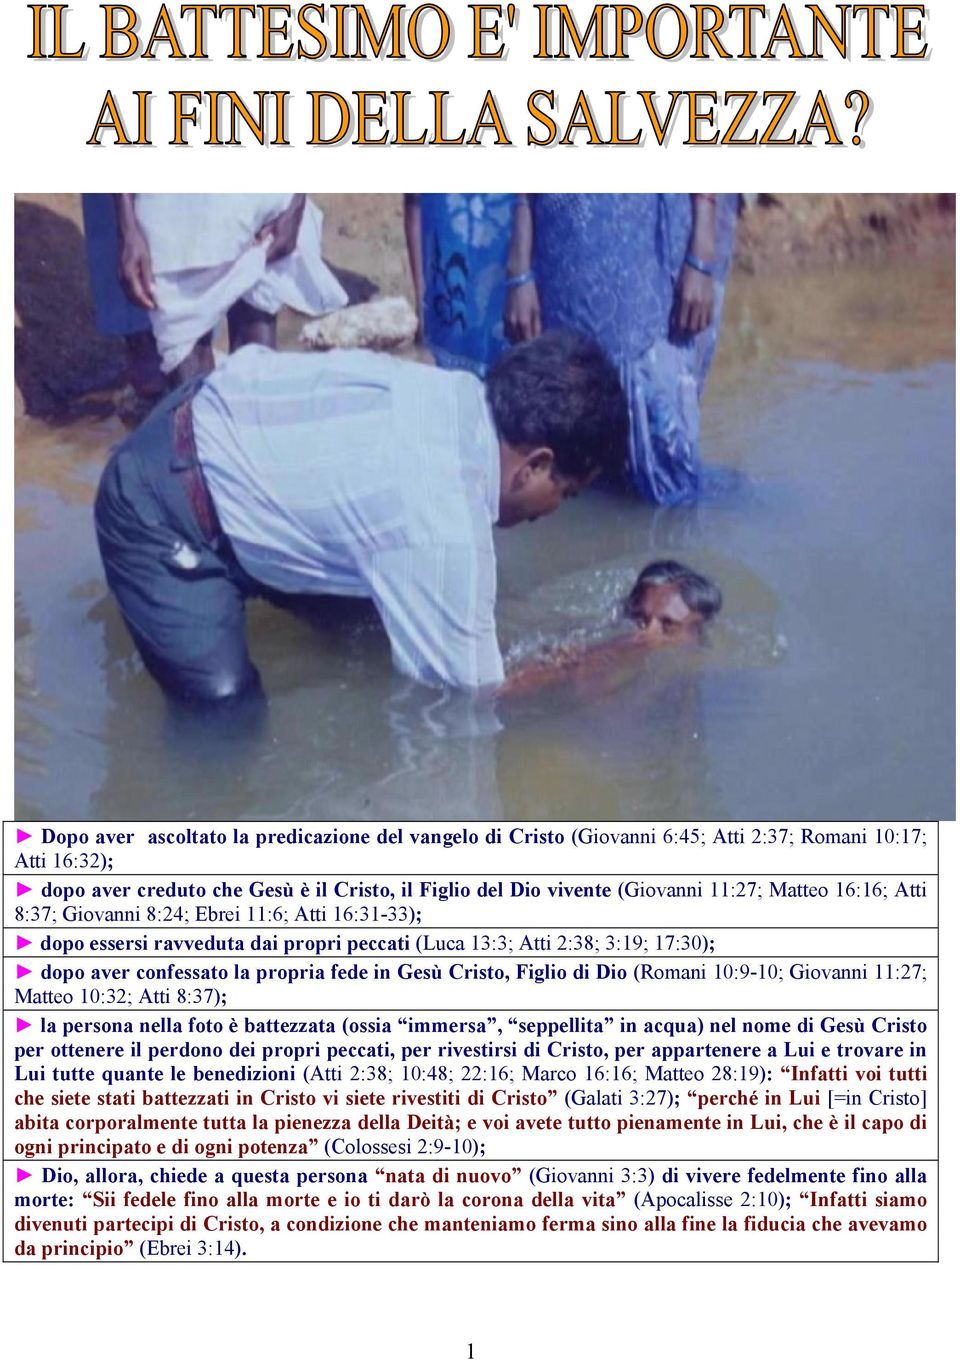 Figlio di Dio (Romani 10:9-10; Giovanni 11:27; Matteo 10:32; Atti 8:37); la persona nella foto è battezzata (ossia immersa, seppellita in acqua) nel nome di Gesù Cristo per ottenere il perdono dei